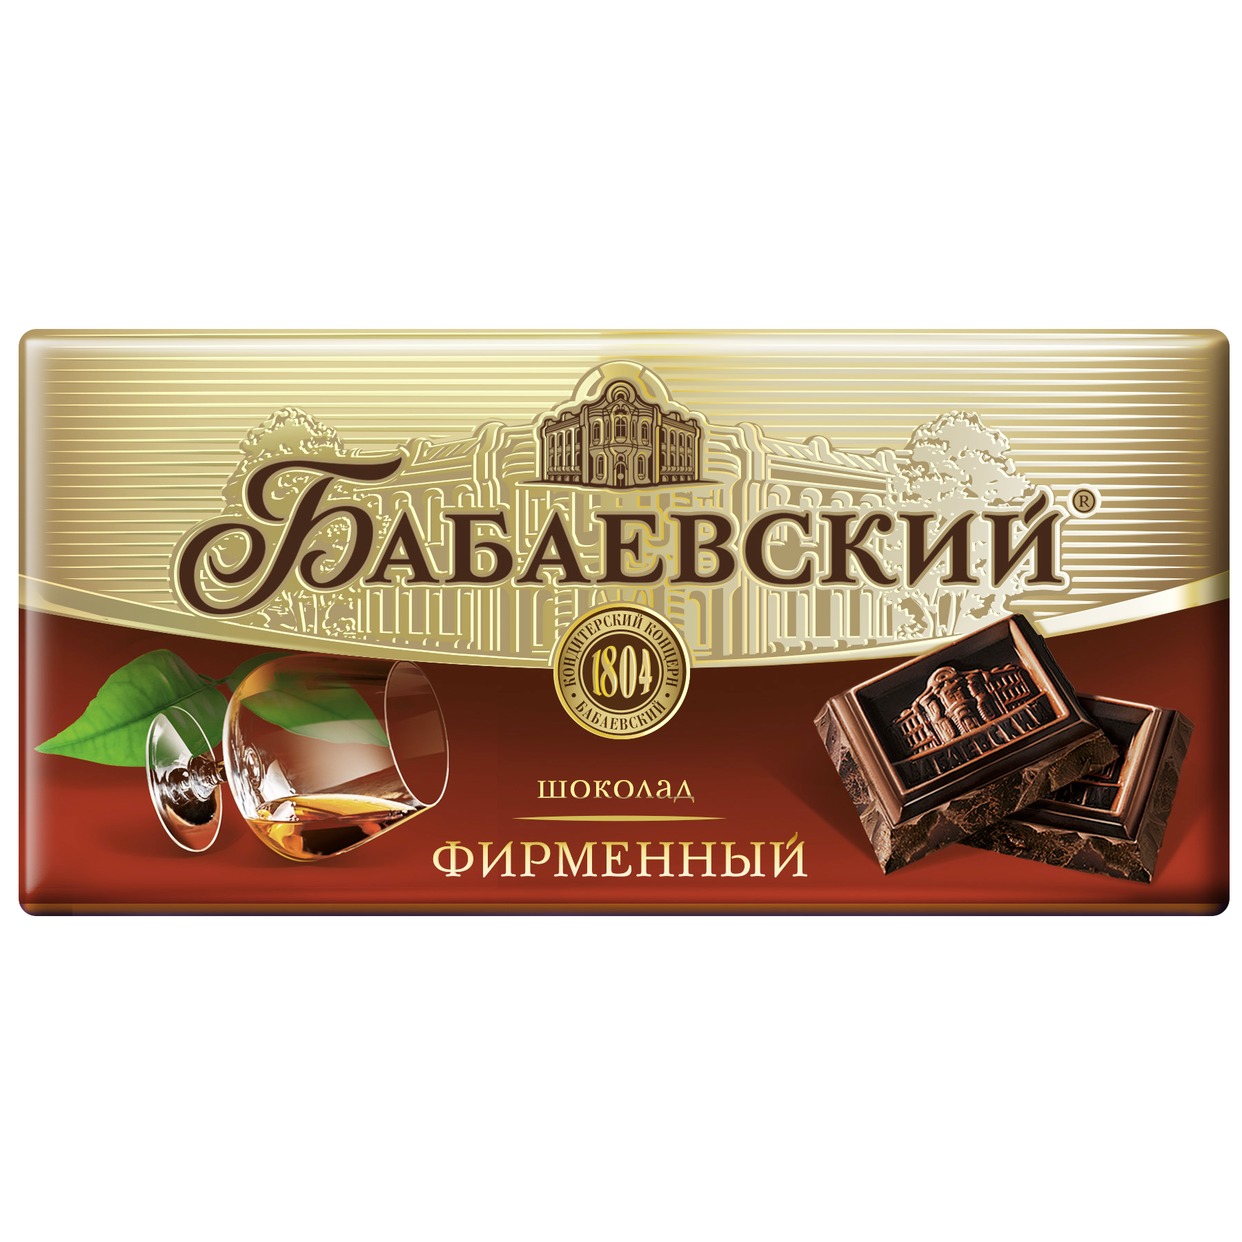 БАБАЕВ.Шоколад фирменный 100г по акции в Пятерочке